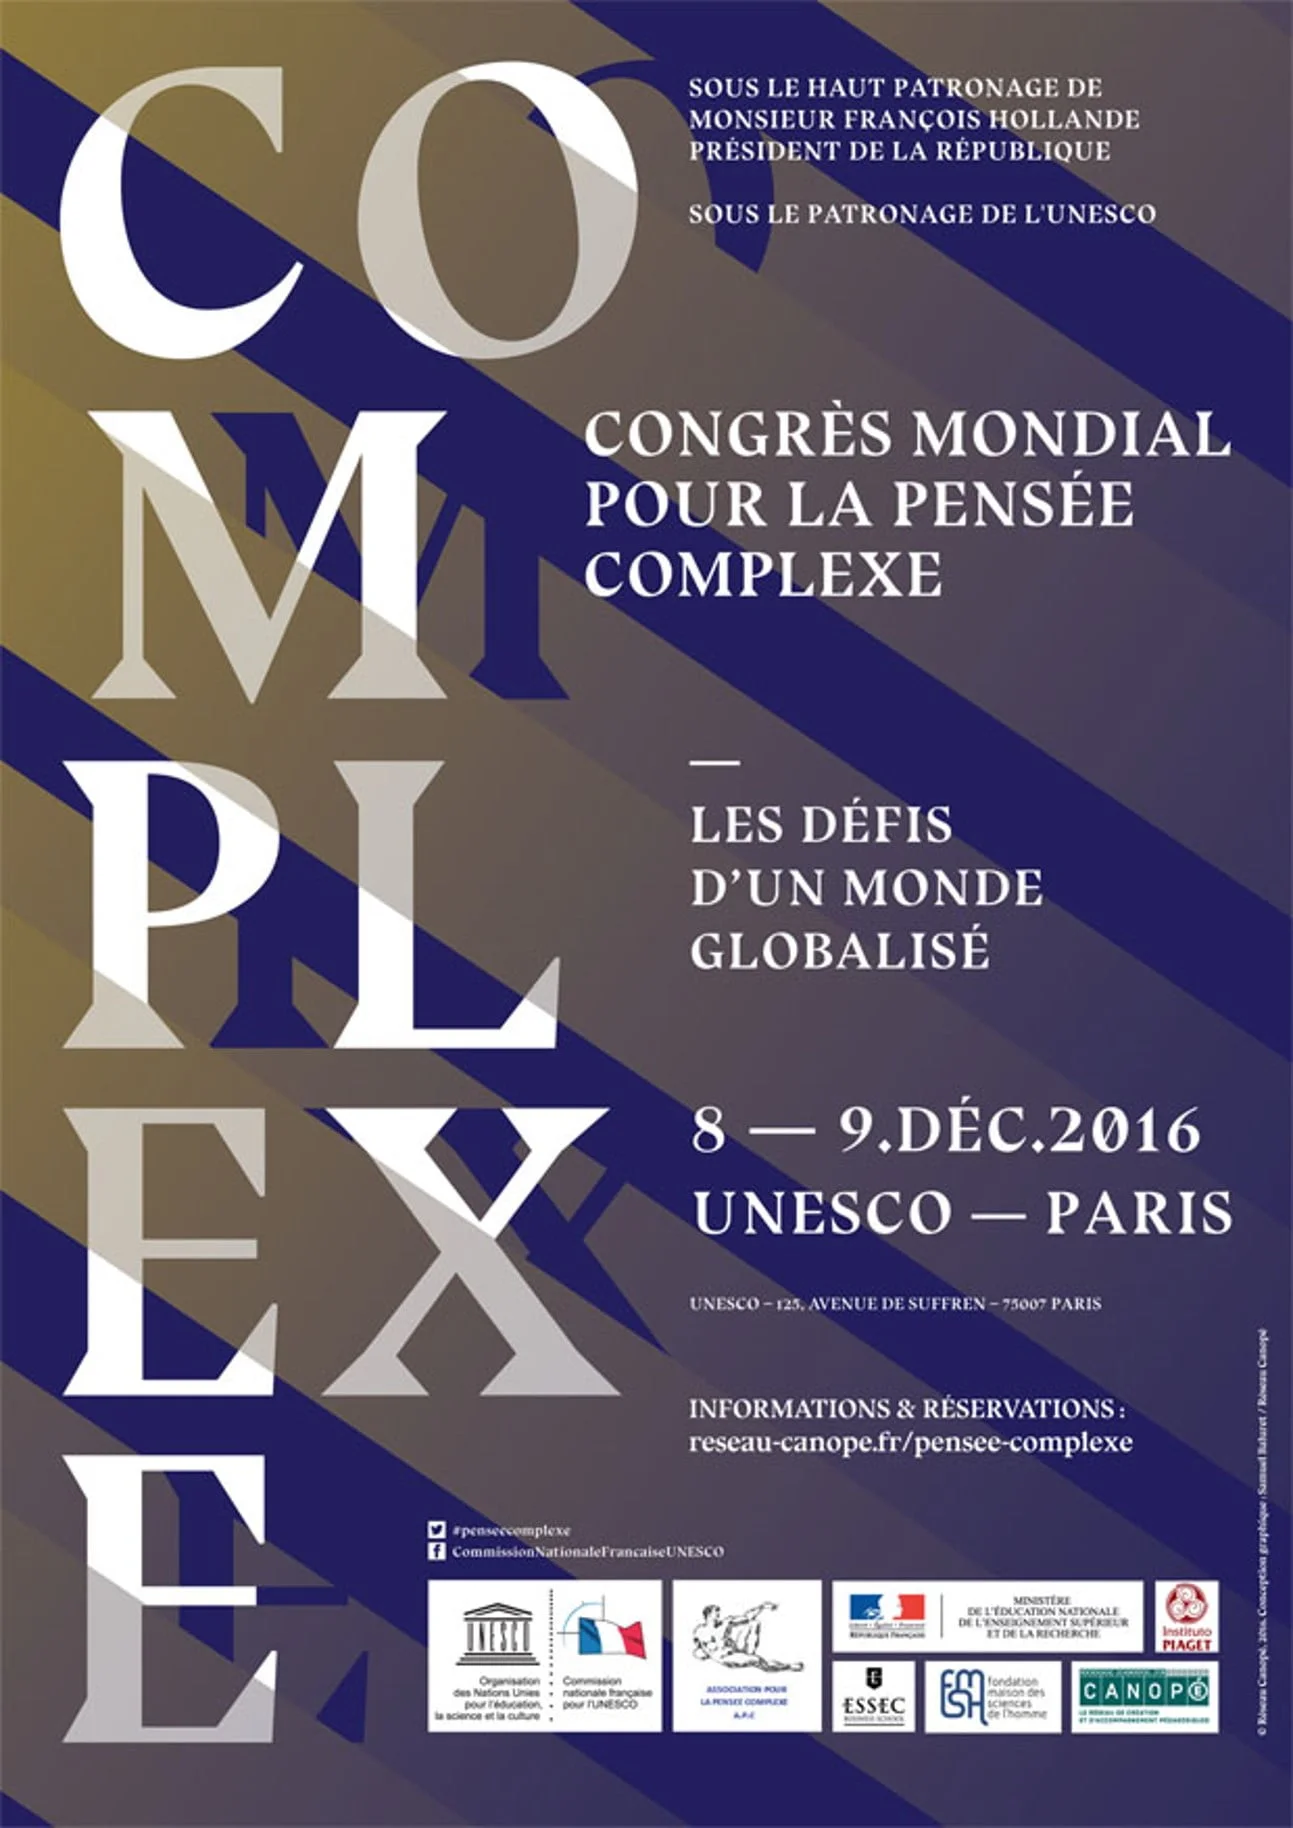 Congrès mondial pour la pensée complexe - UNESCO PARIS 2016